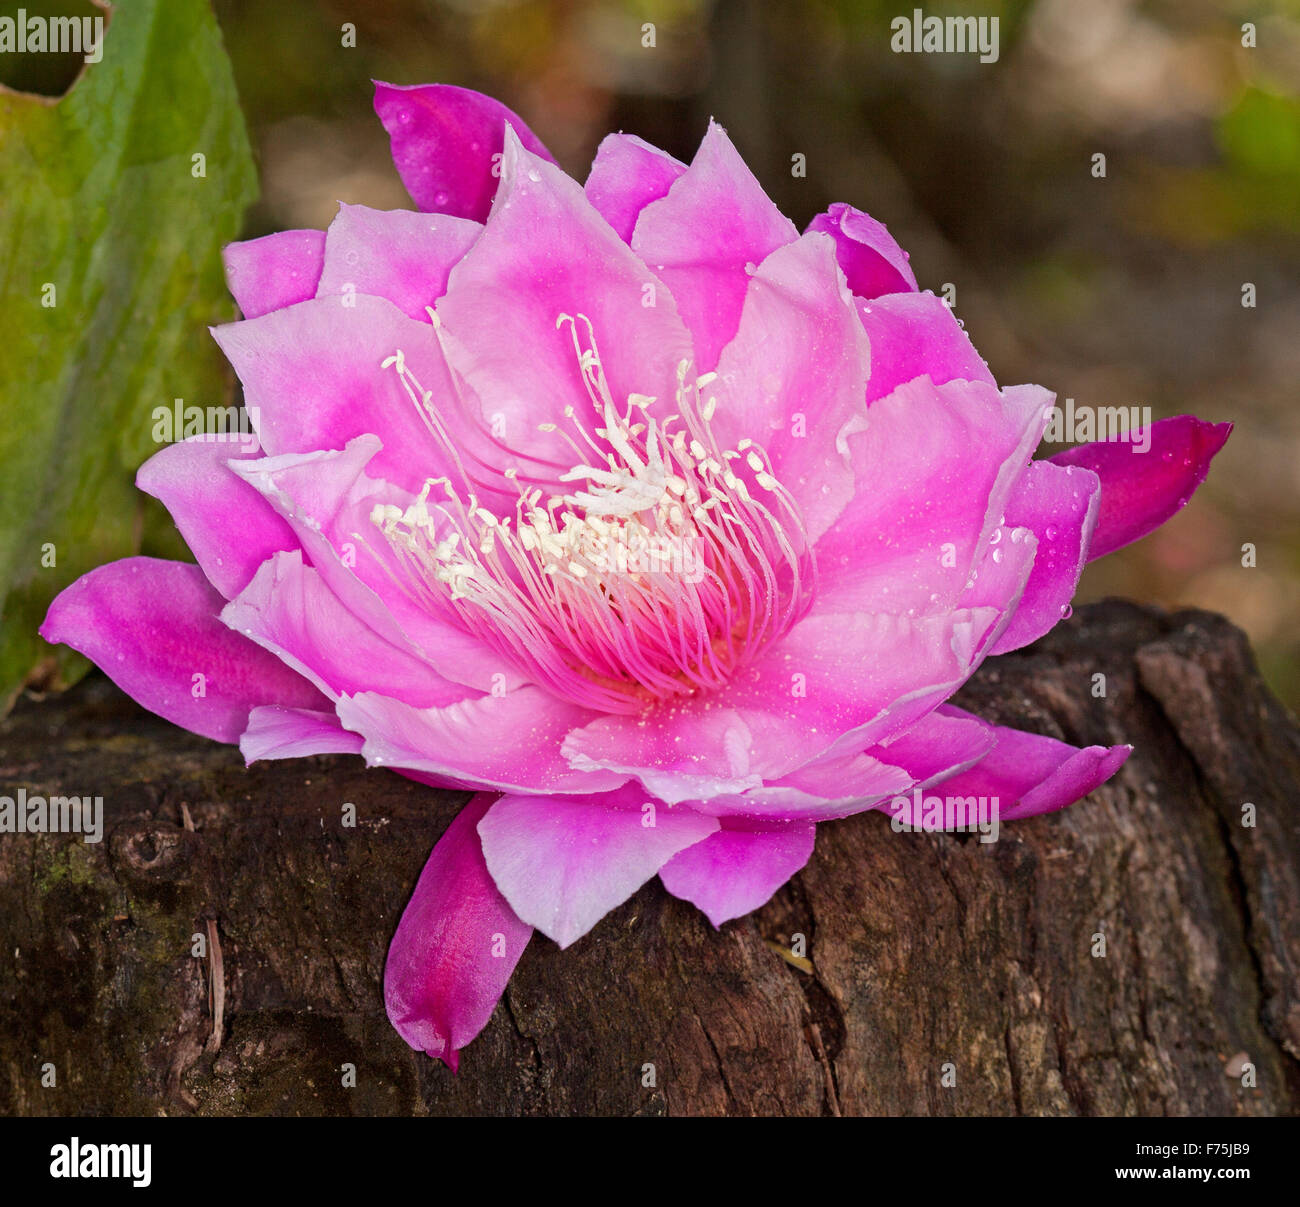 Spectacular large vivid pink flower of Epiphyllum cactus, shade-loving epiphytic plant Stock Photo